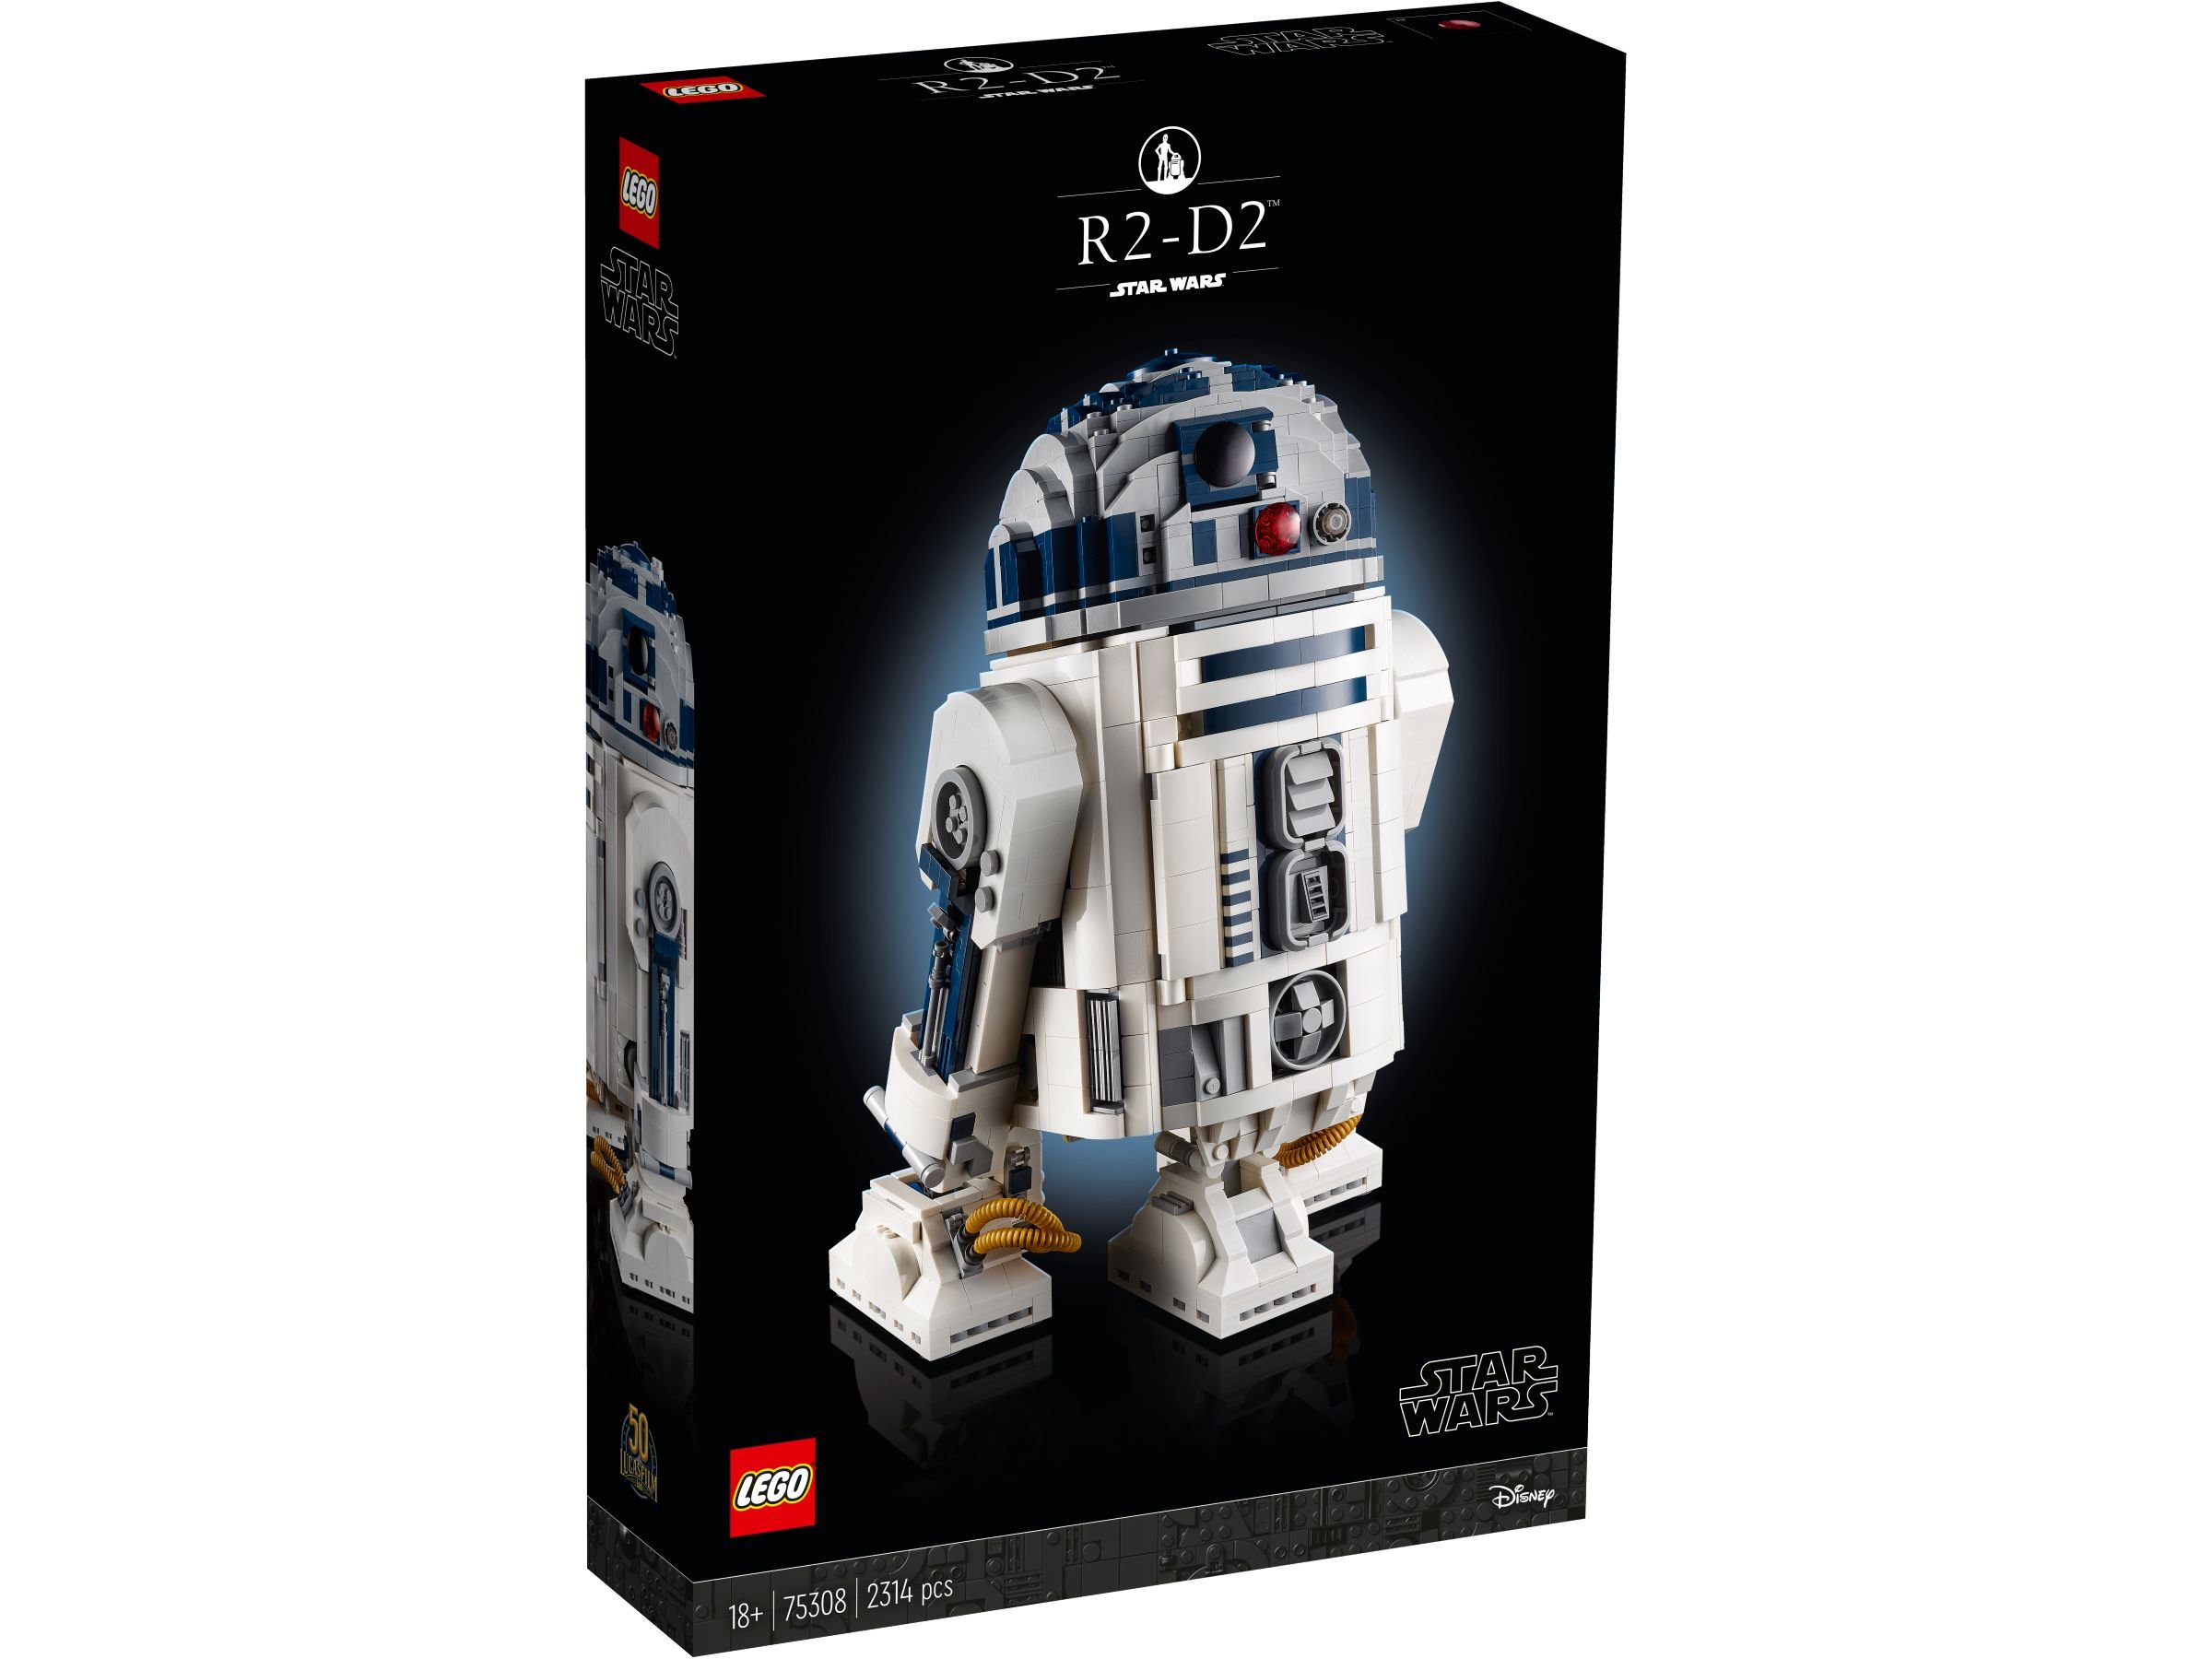 LEGO Star Wars 75308 R2-D2™ LEGO_75308_box1_v29.jpg